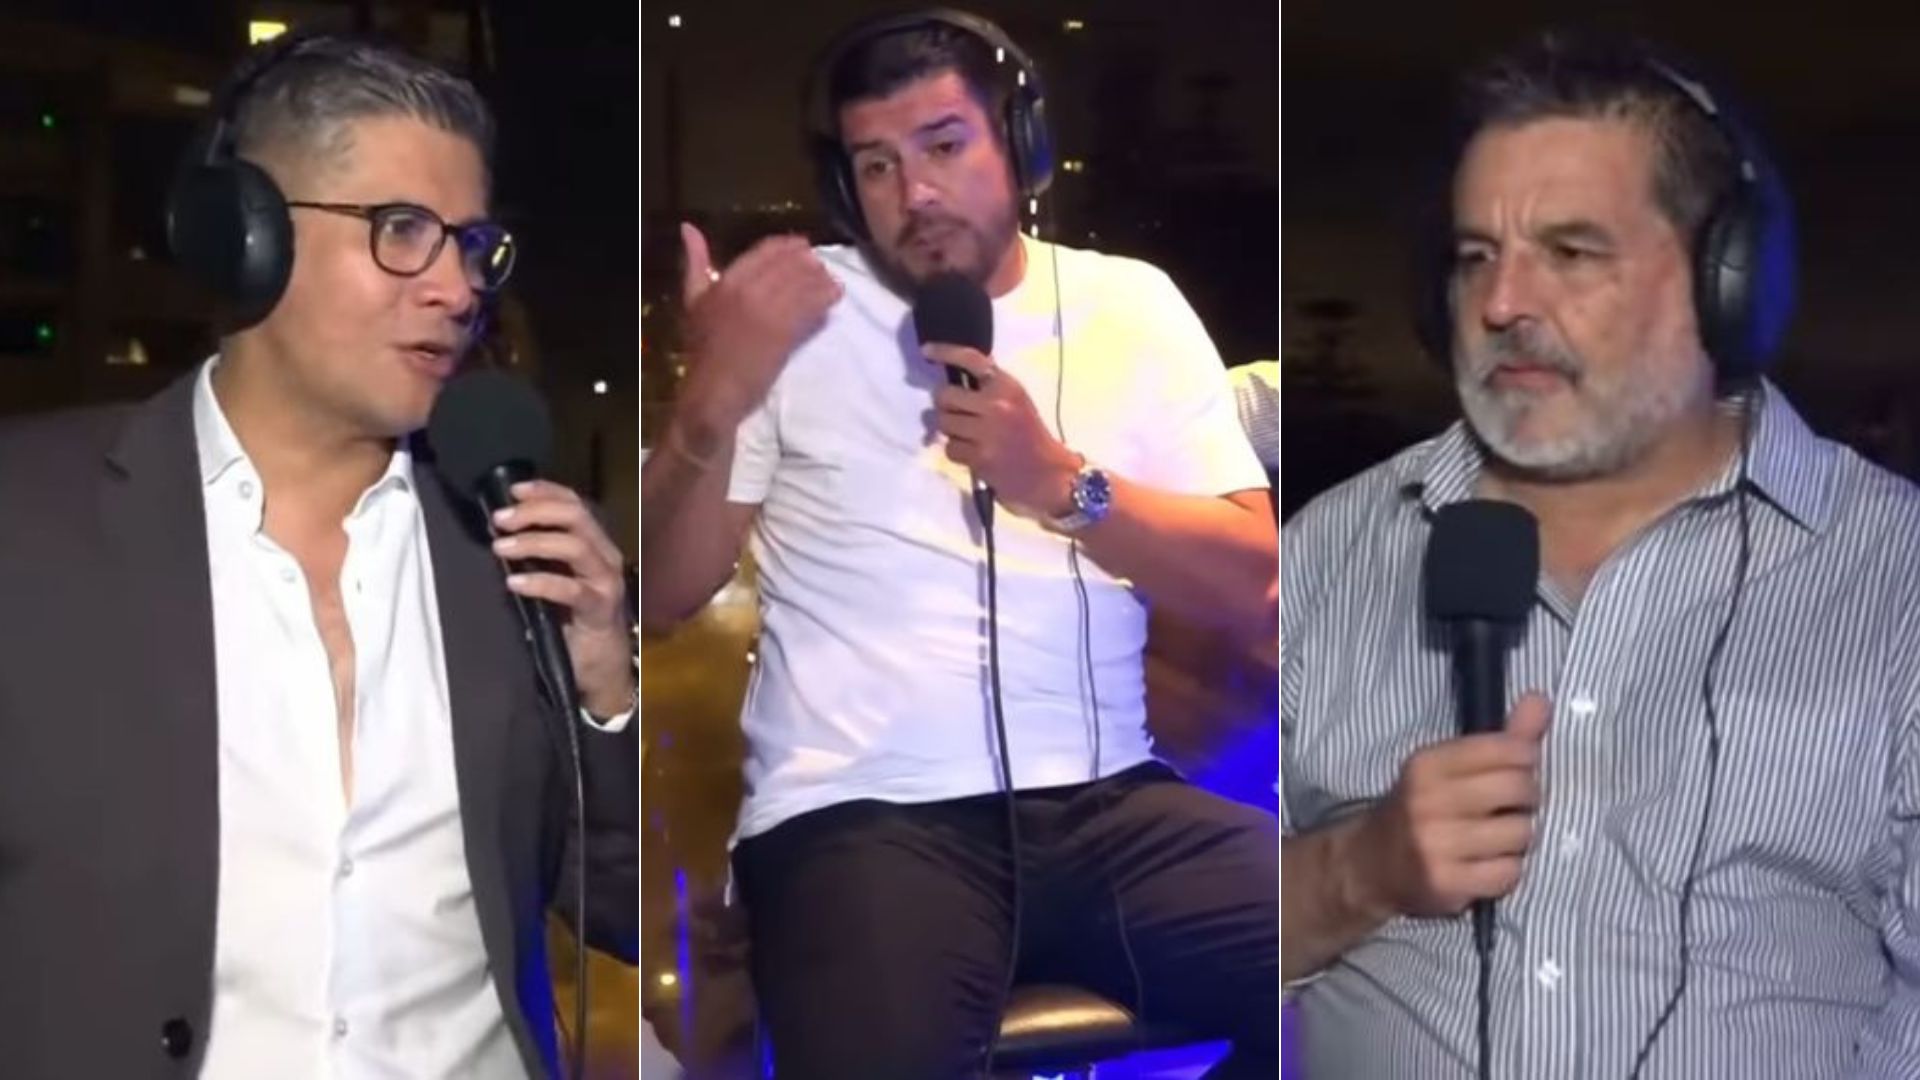 Rechazan comentarios de Erick Osores, Gonzalo Núñez y Erick Delgado sobre el racismo: “son estupideces, en el Perú no hay”